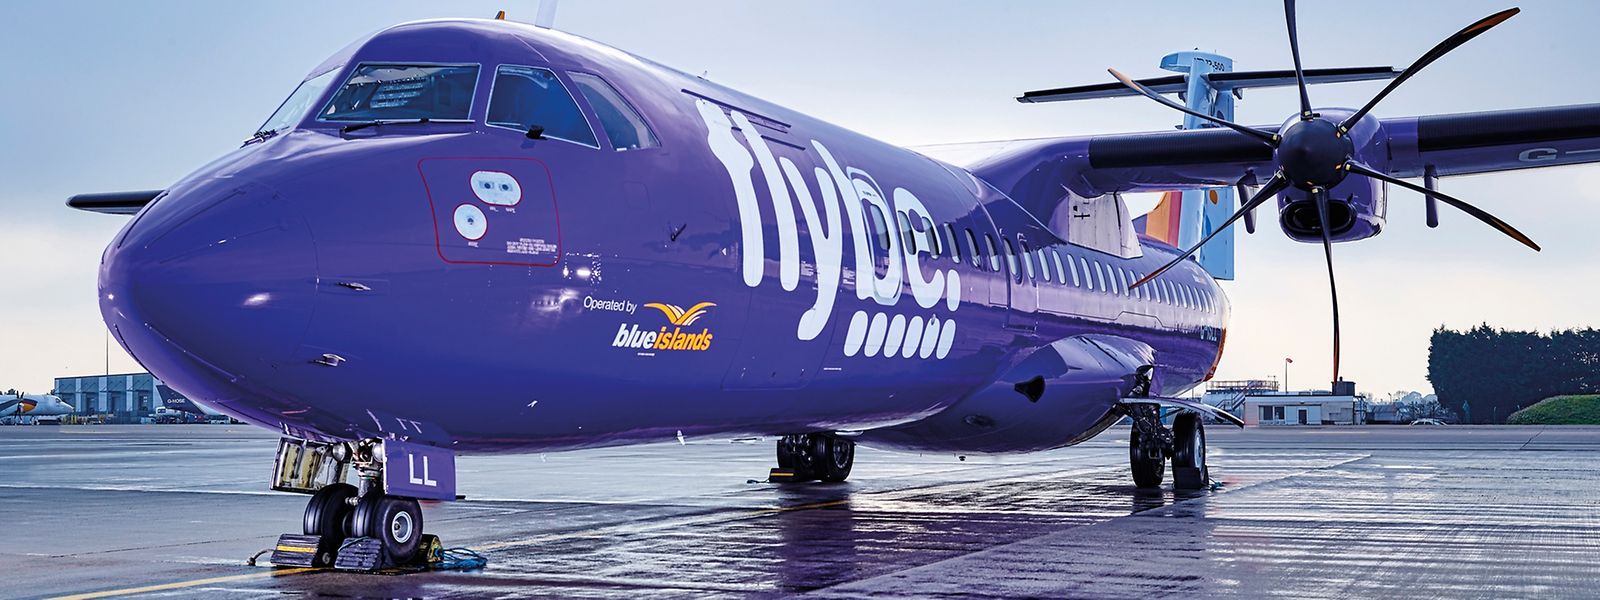 Die Gesellschaft Blue Islands fliegt auf Franchise-Basis für Flybe, die bereits den luxemburgischen Flughafen  ansteuern und Flüge nach Manchester anbieten.